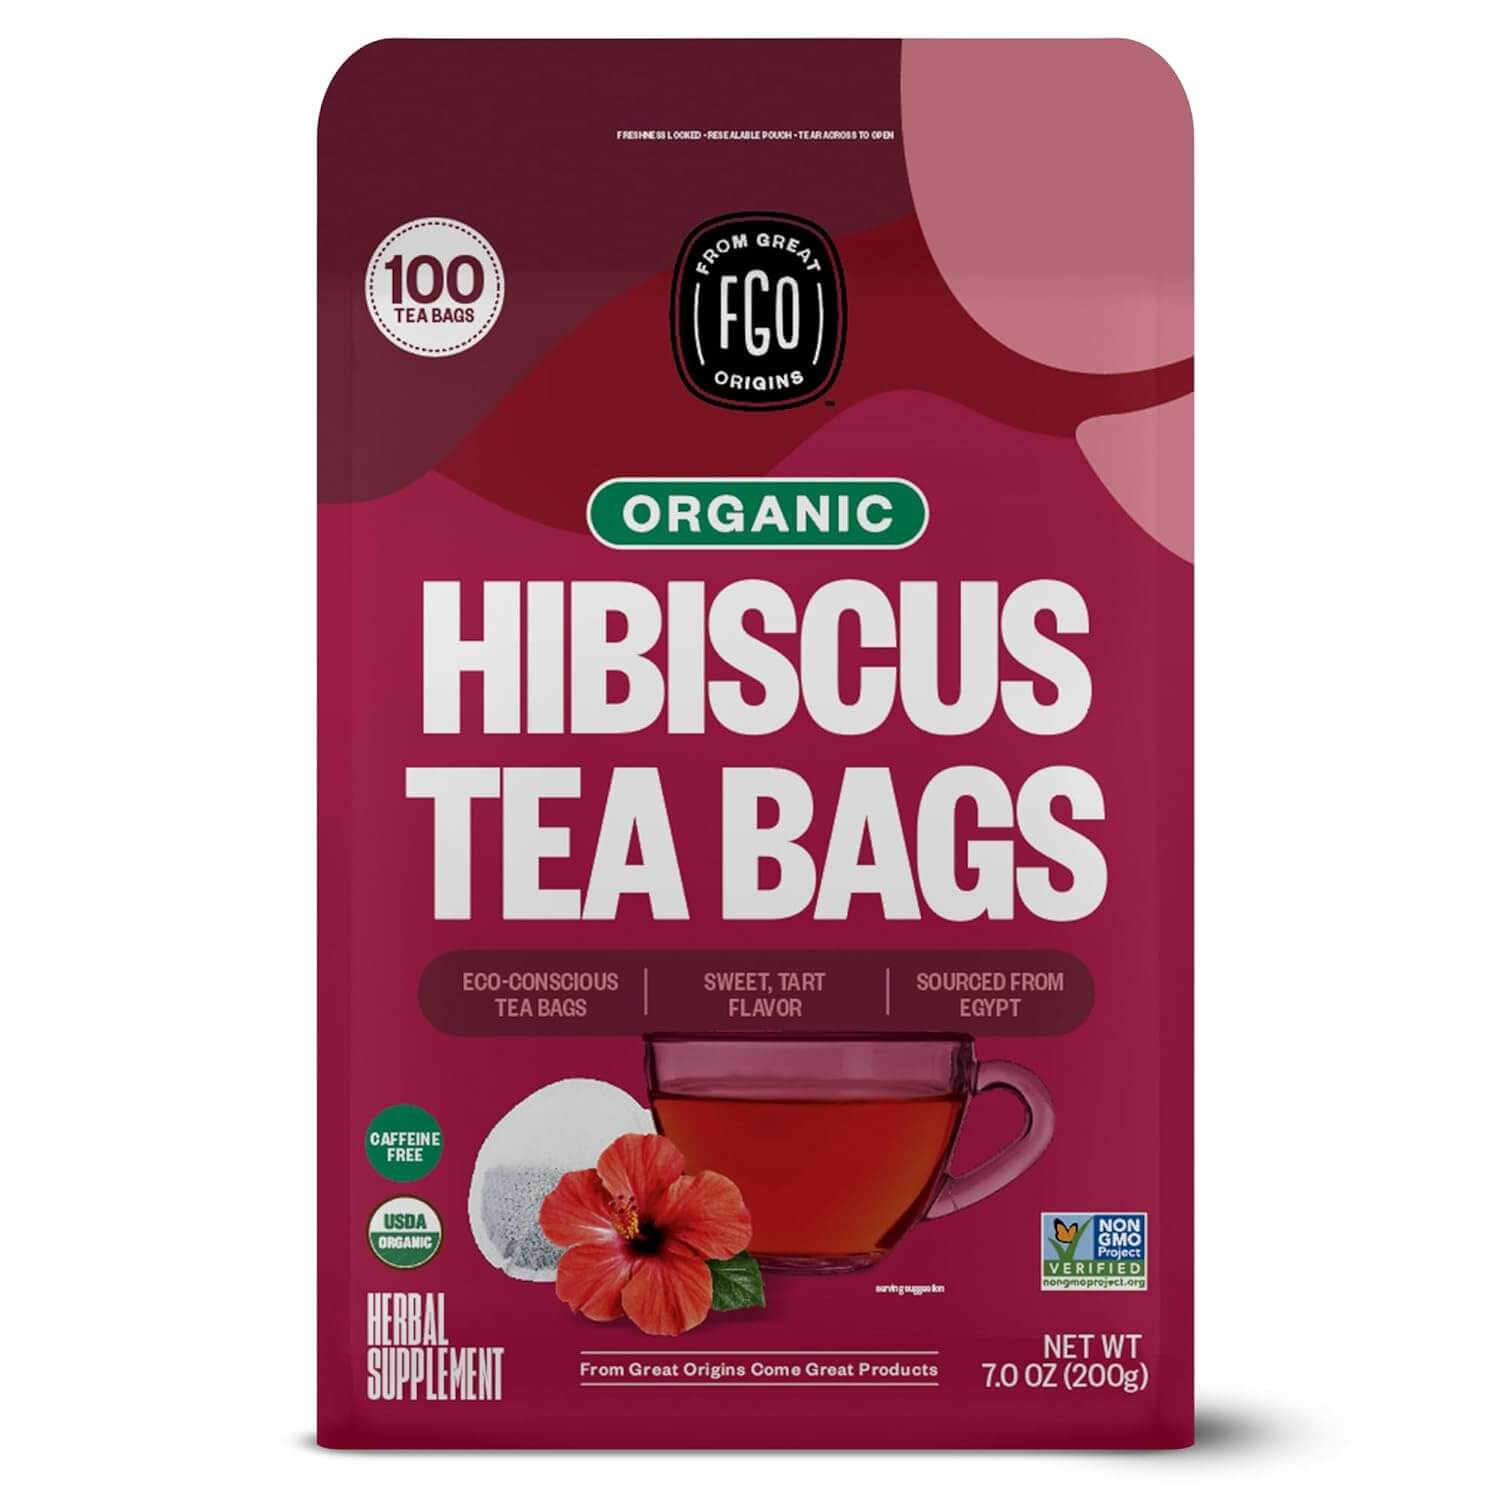 FGO Organic Hibiscus Tea, Eco-Conscious Tea Bags